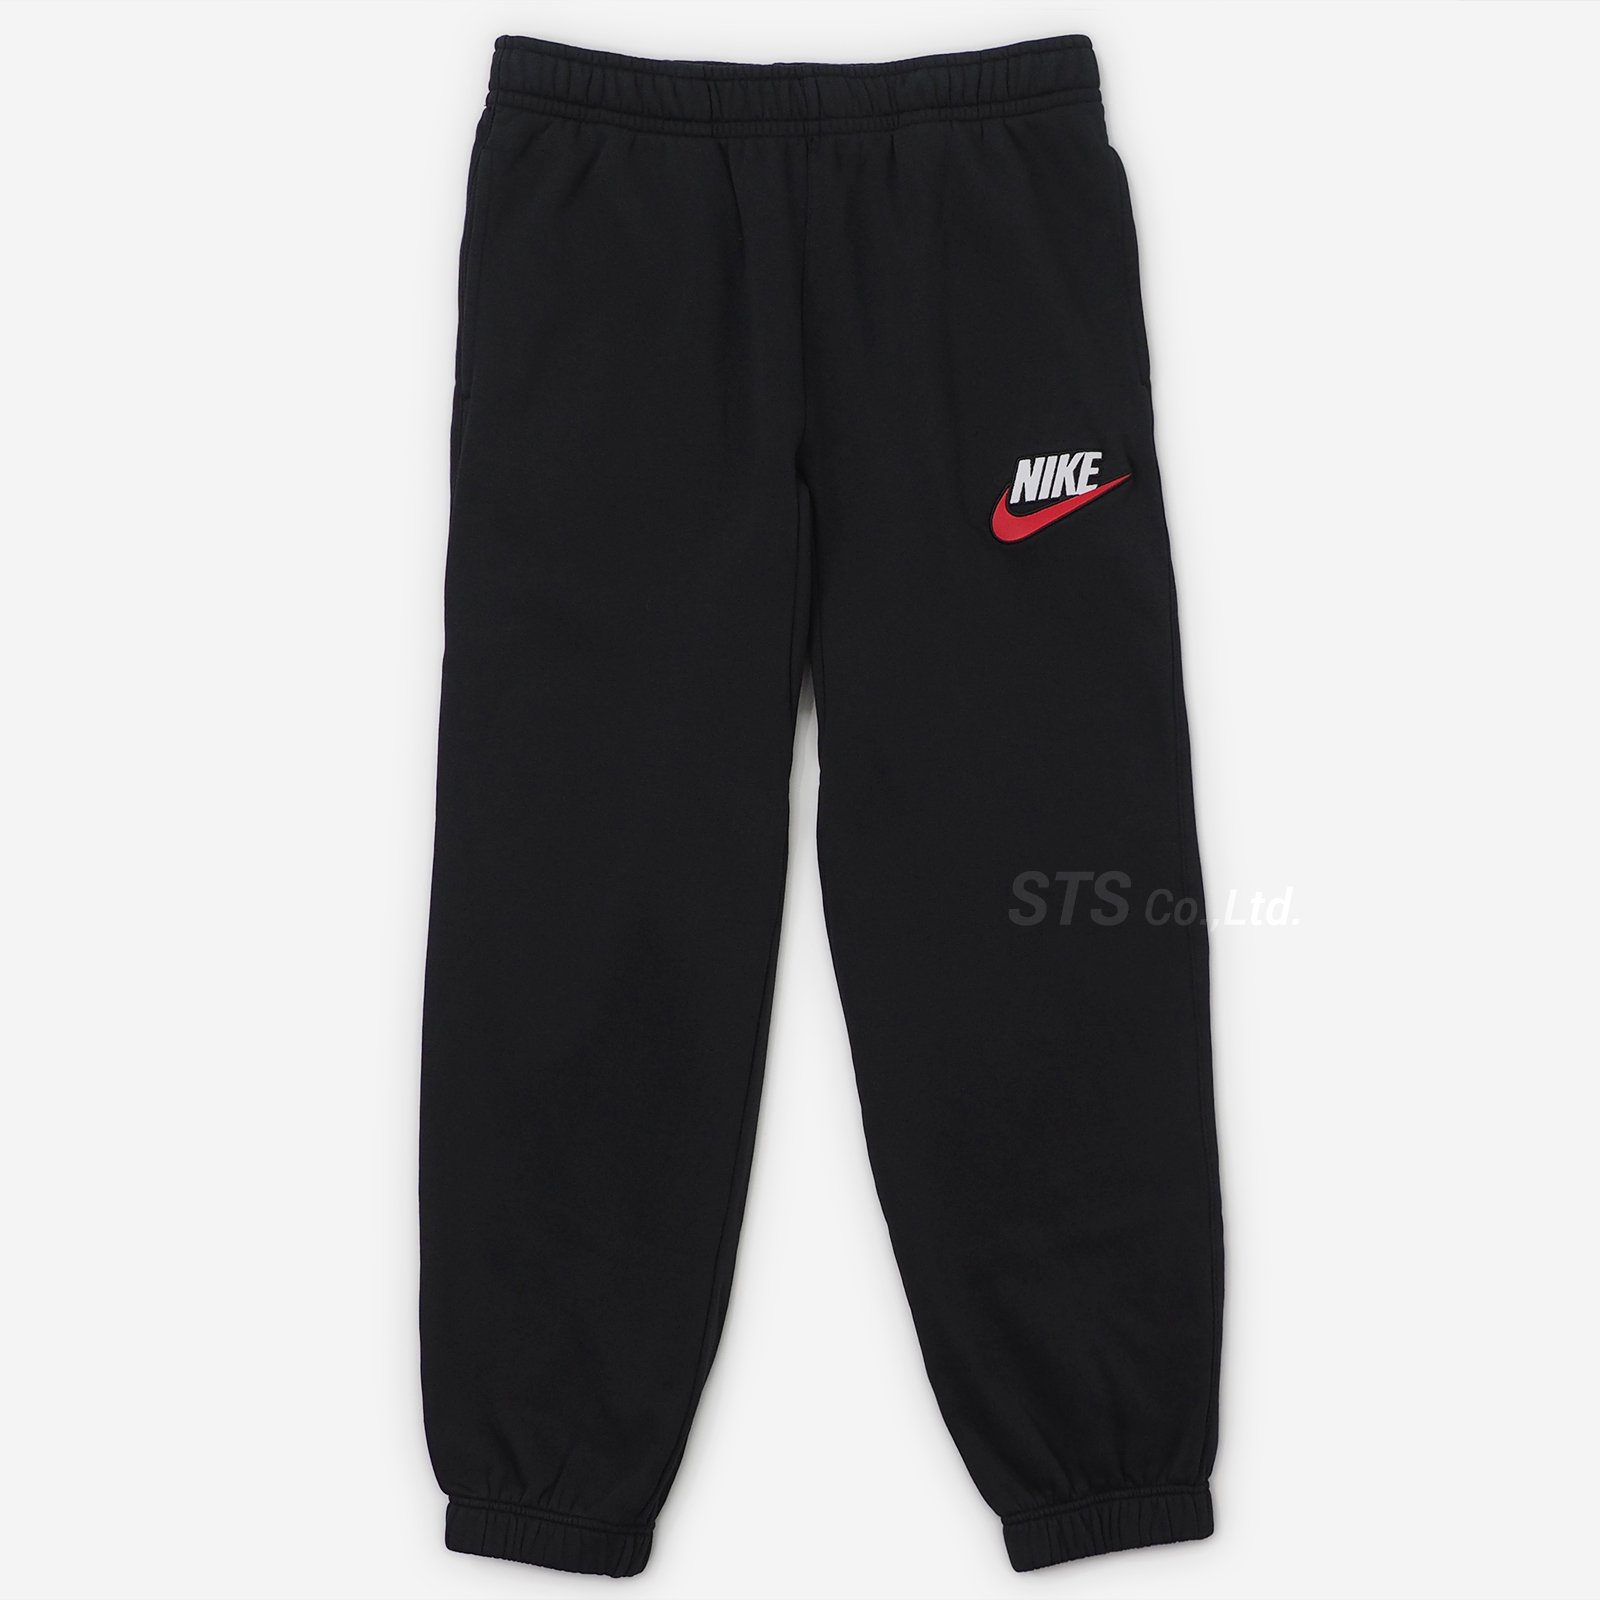 Supreme/Nike Sweatpant - UG.SHAFT